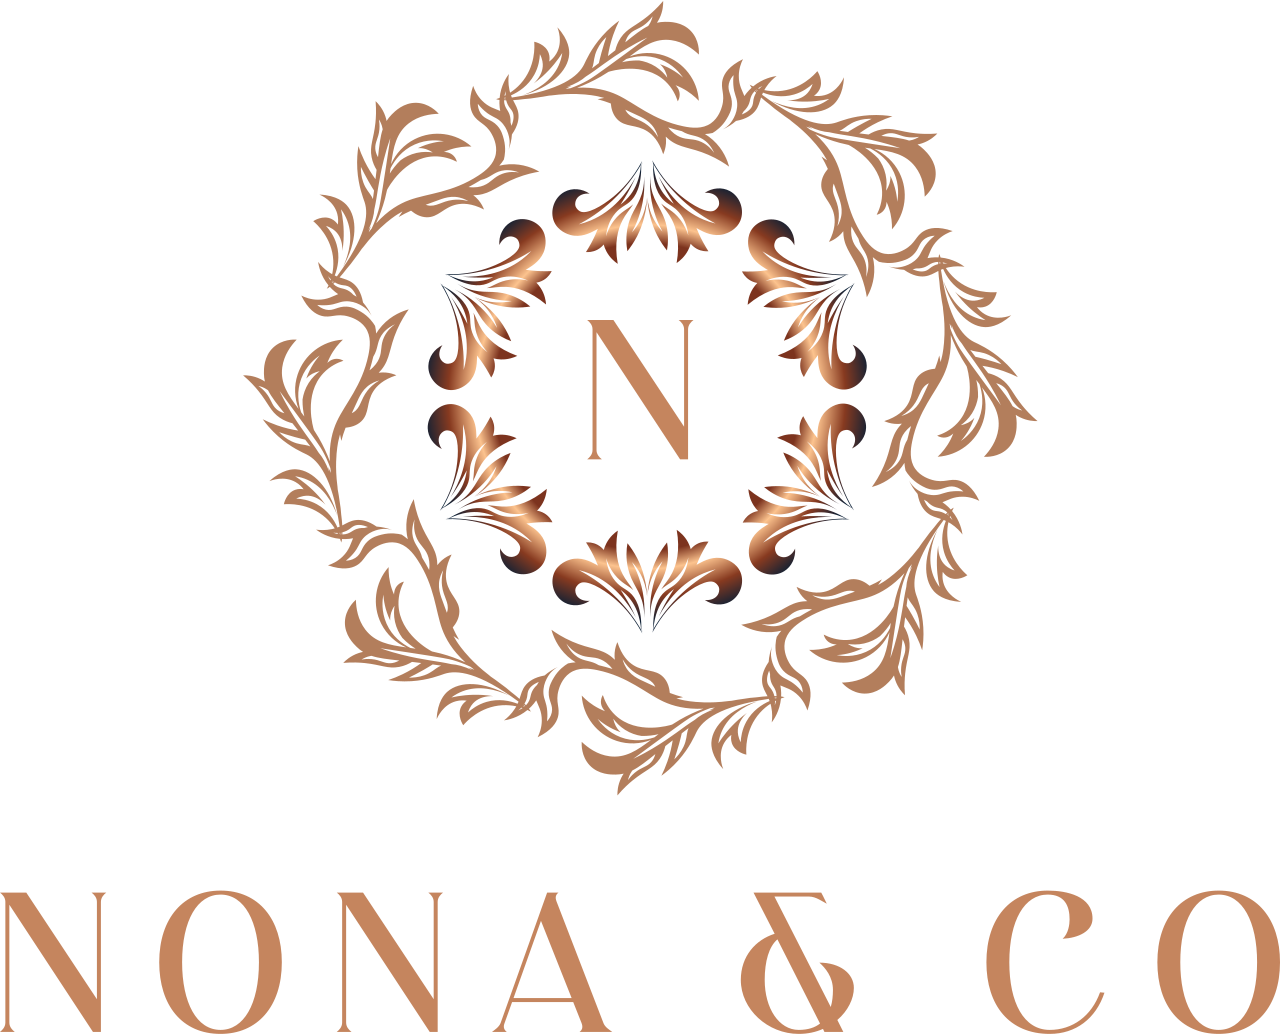 Nona & Co's logo